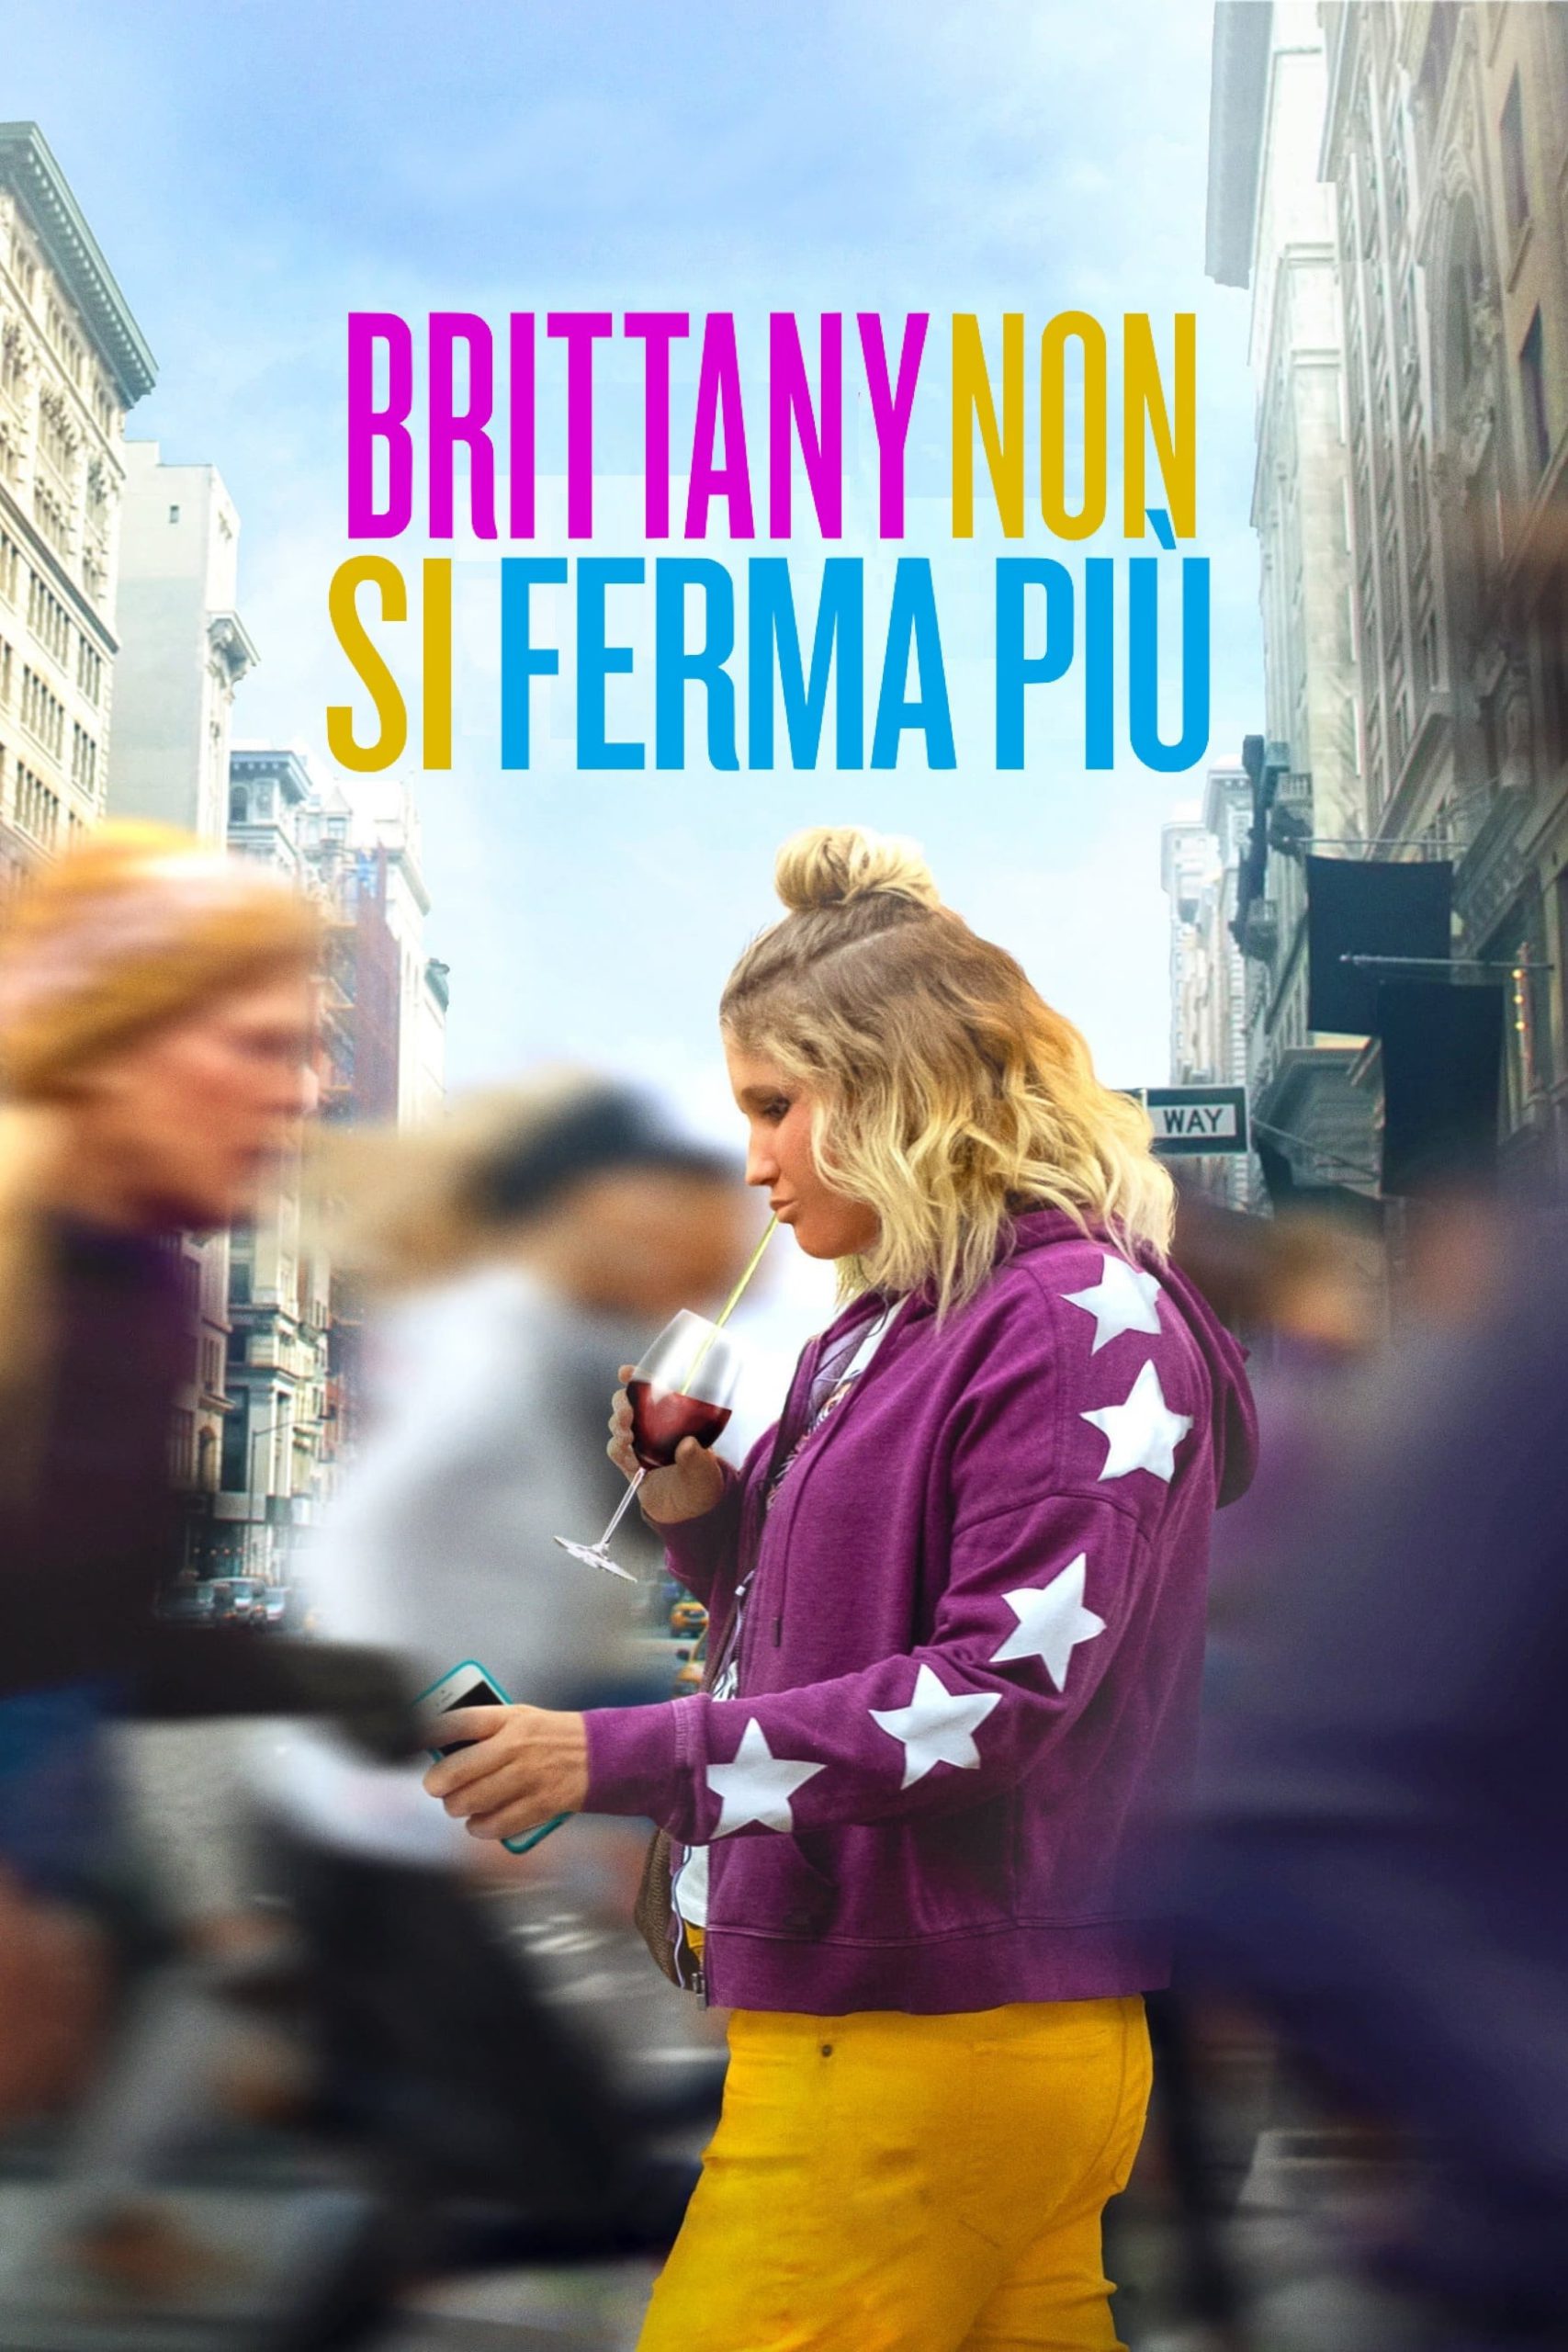 Brittany non si ferma più [HD] (2019)